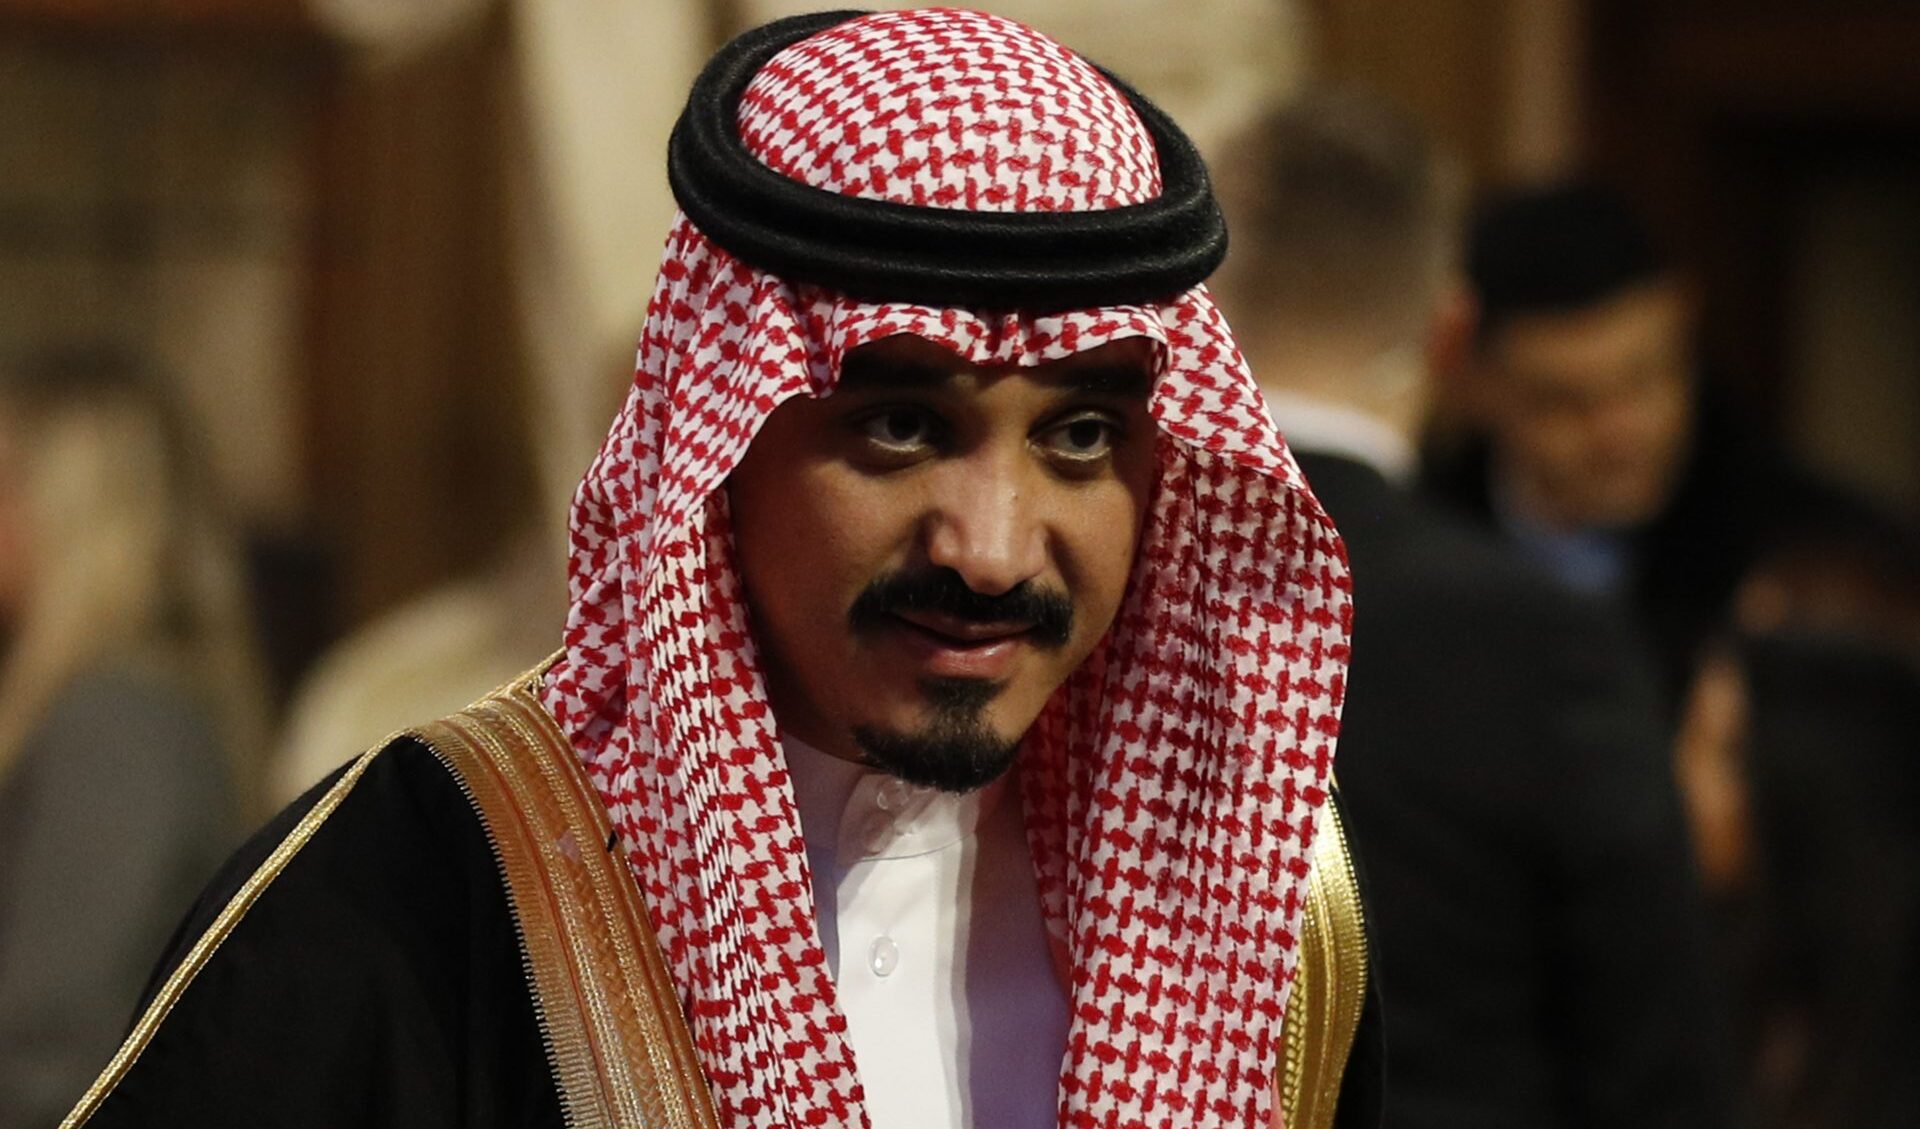 L'Arabia Saudita vuole normalizzare le relazioni con Israele ma ci vuole la creazione dello stato di Palestina